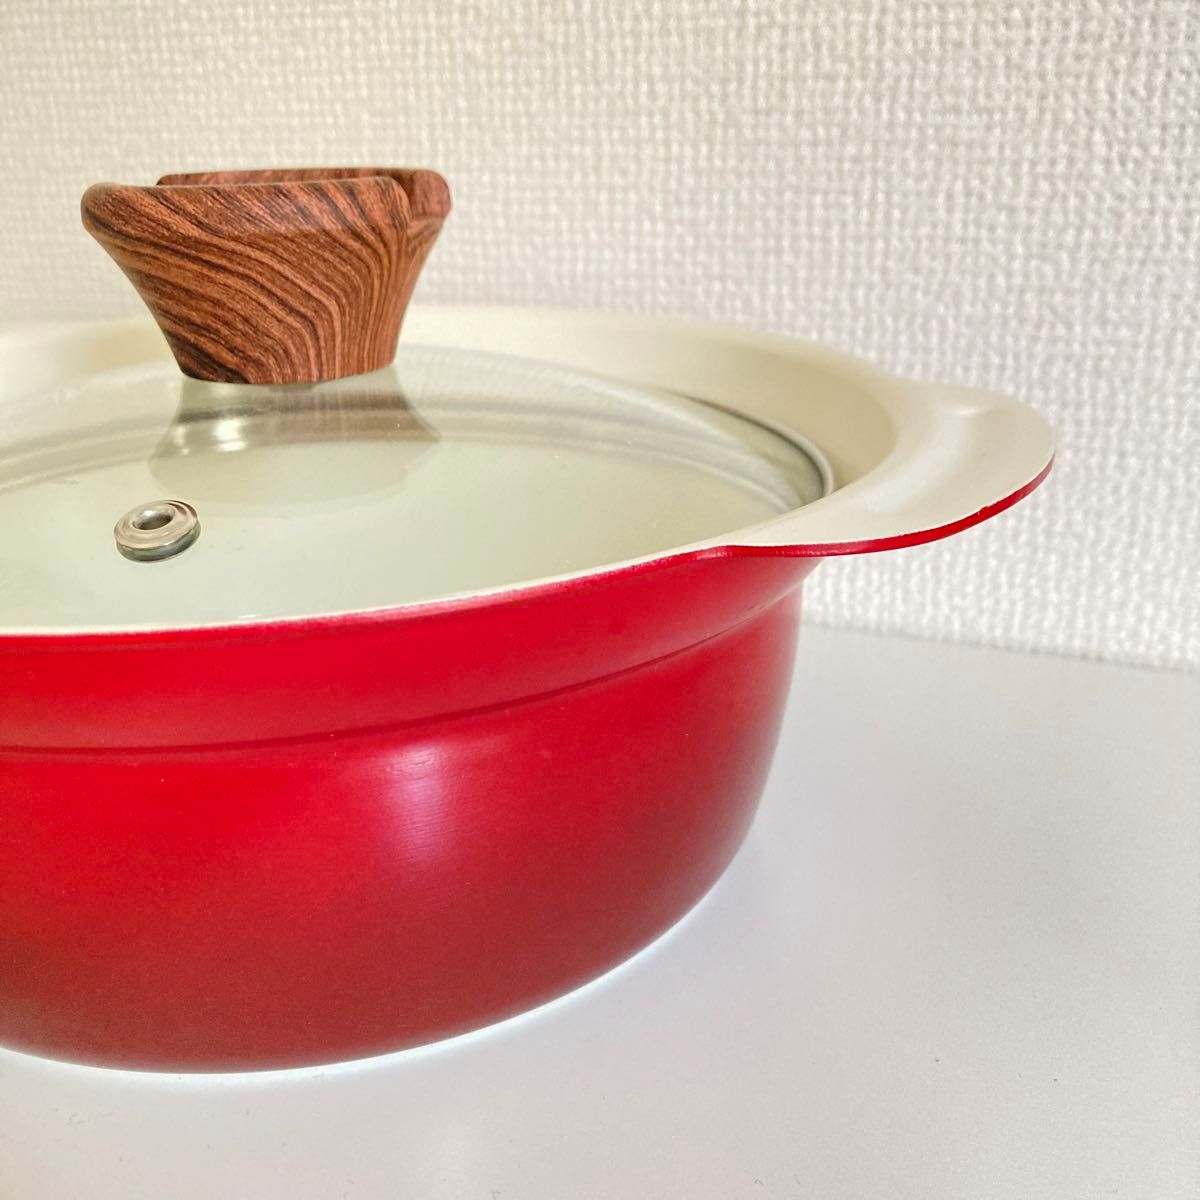 鍋 調理器具 赤 グラデーションデザイン レッド 美品 箱あり 両手鍋